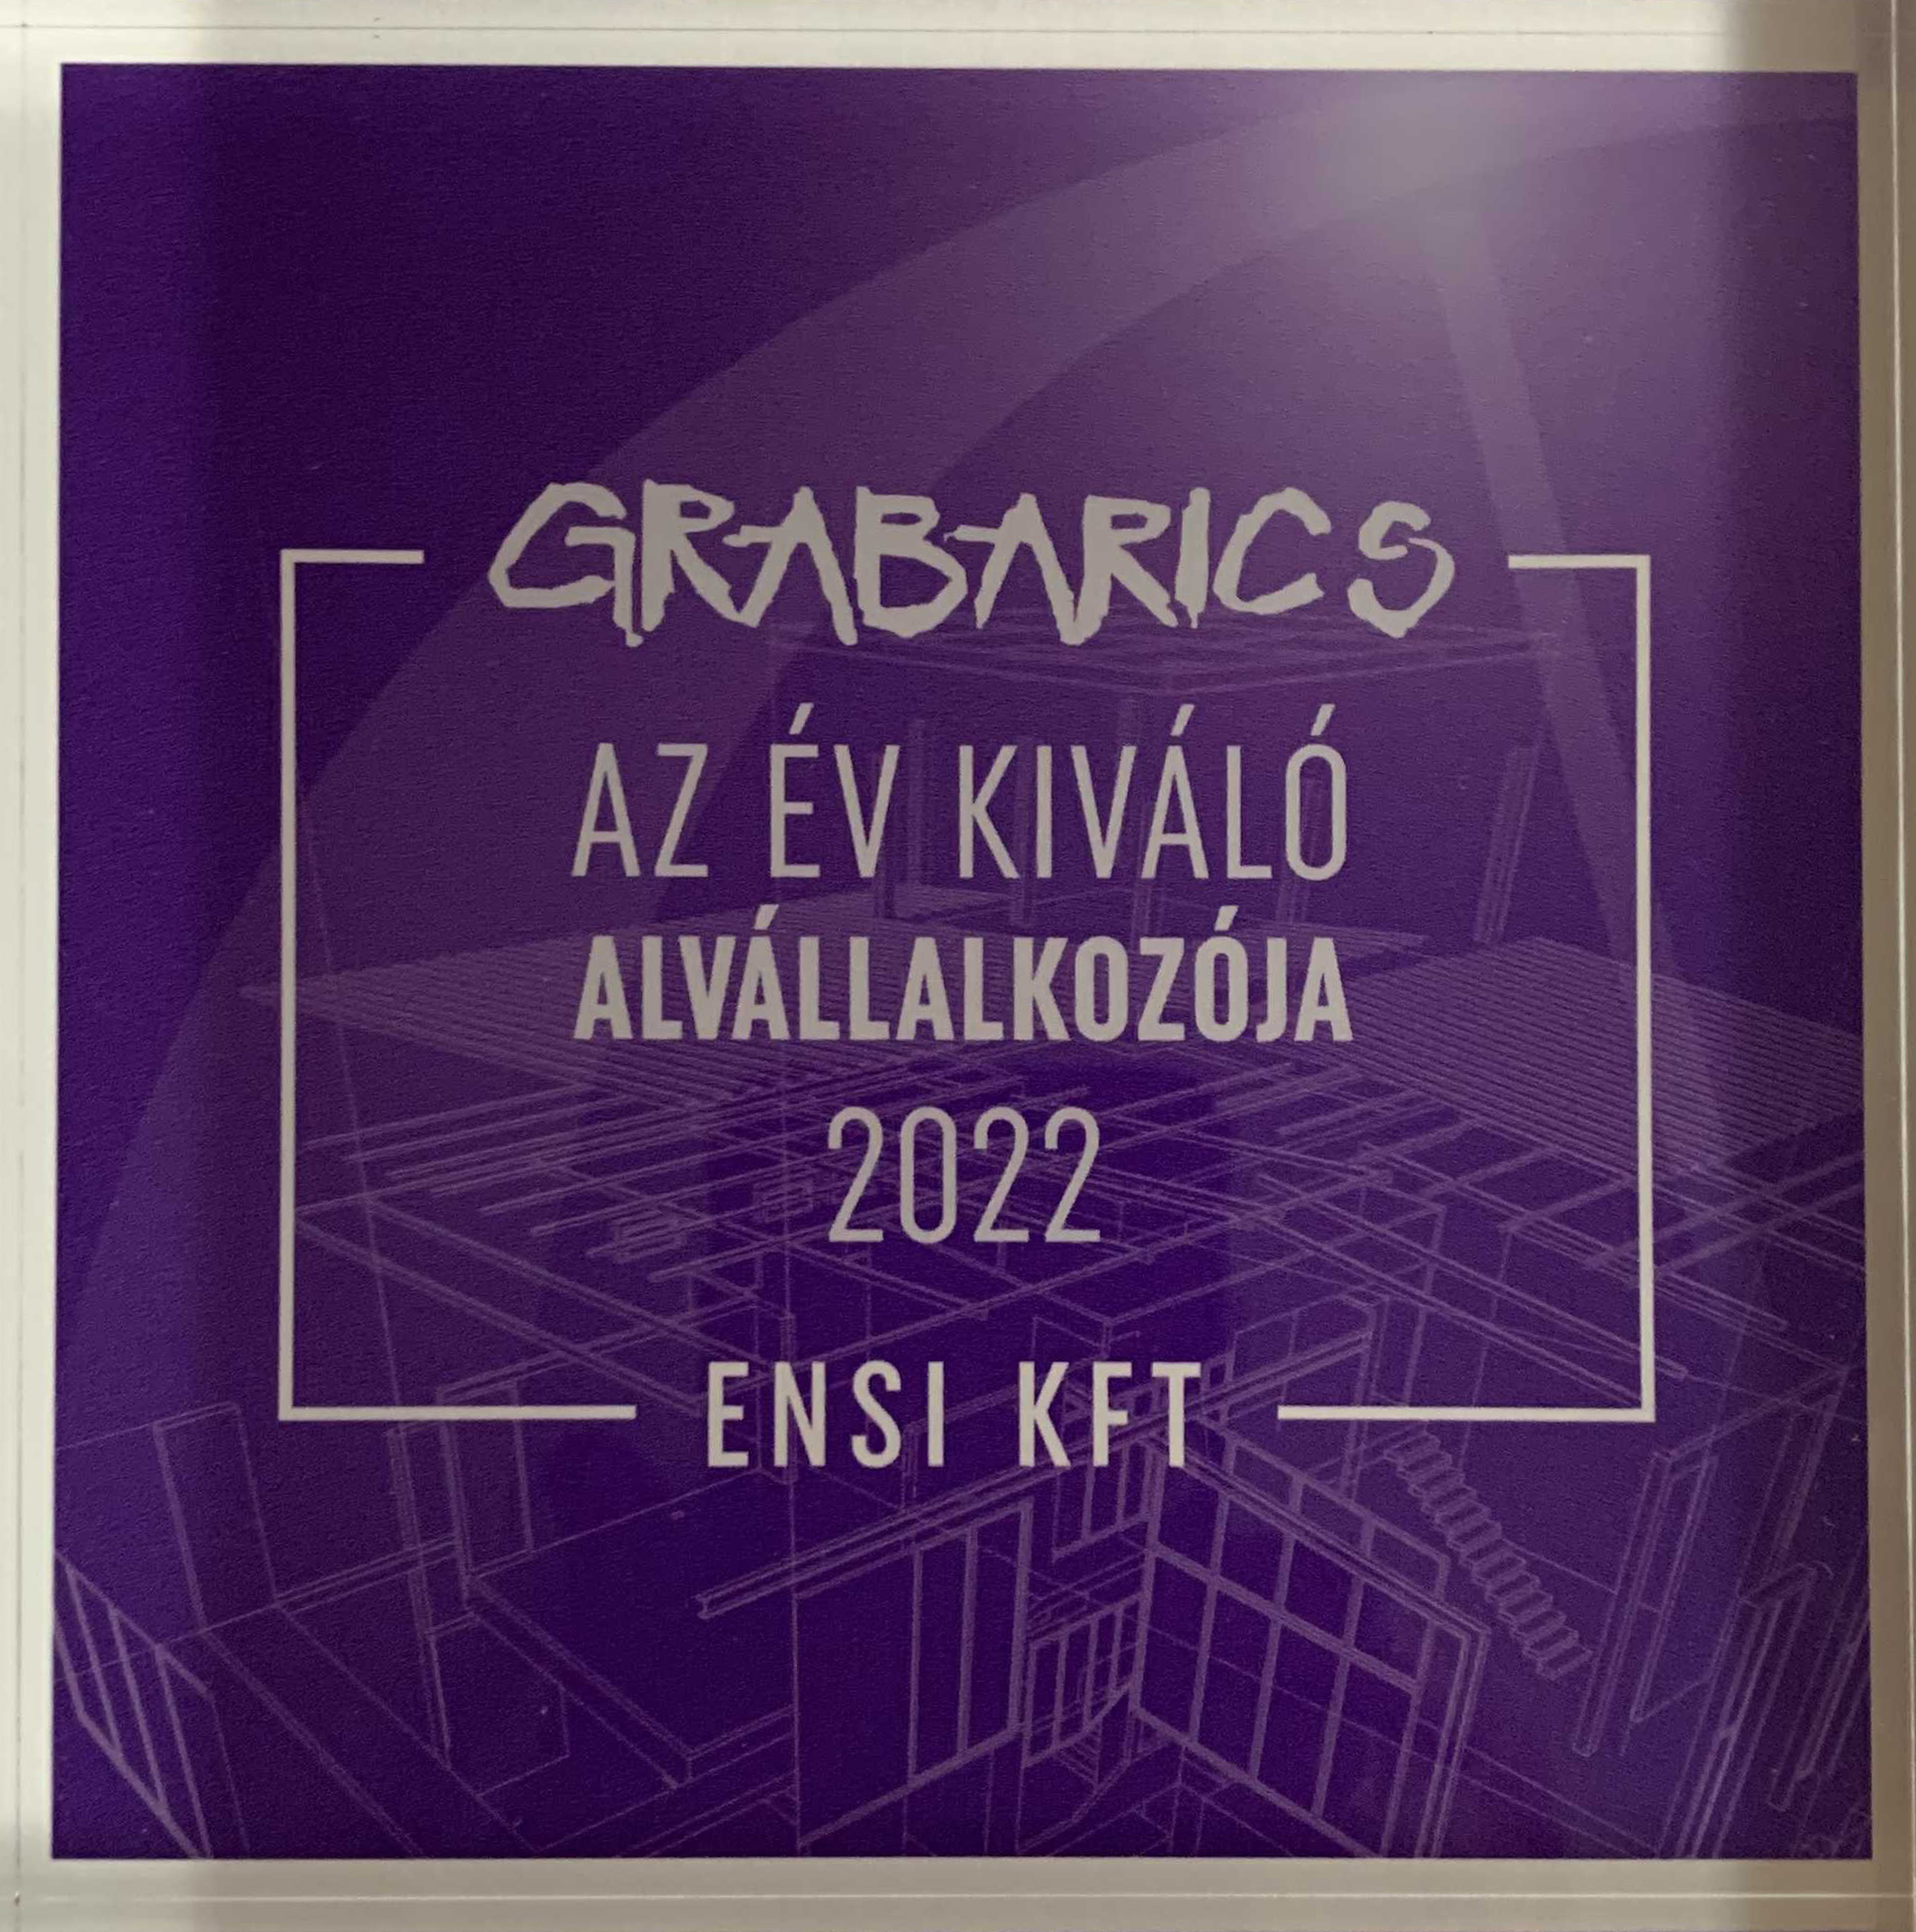 Grabarics Kft. elismerése az ENSI Kft. részére - 2022